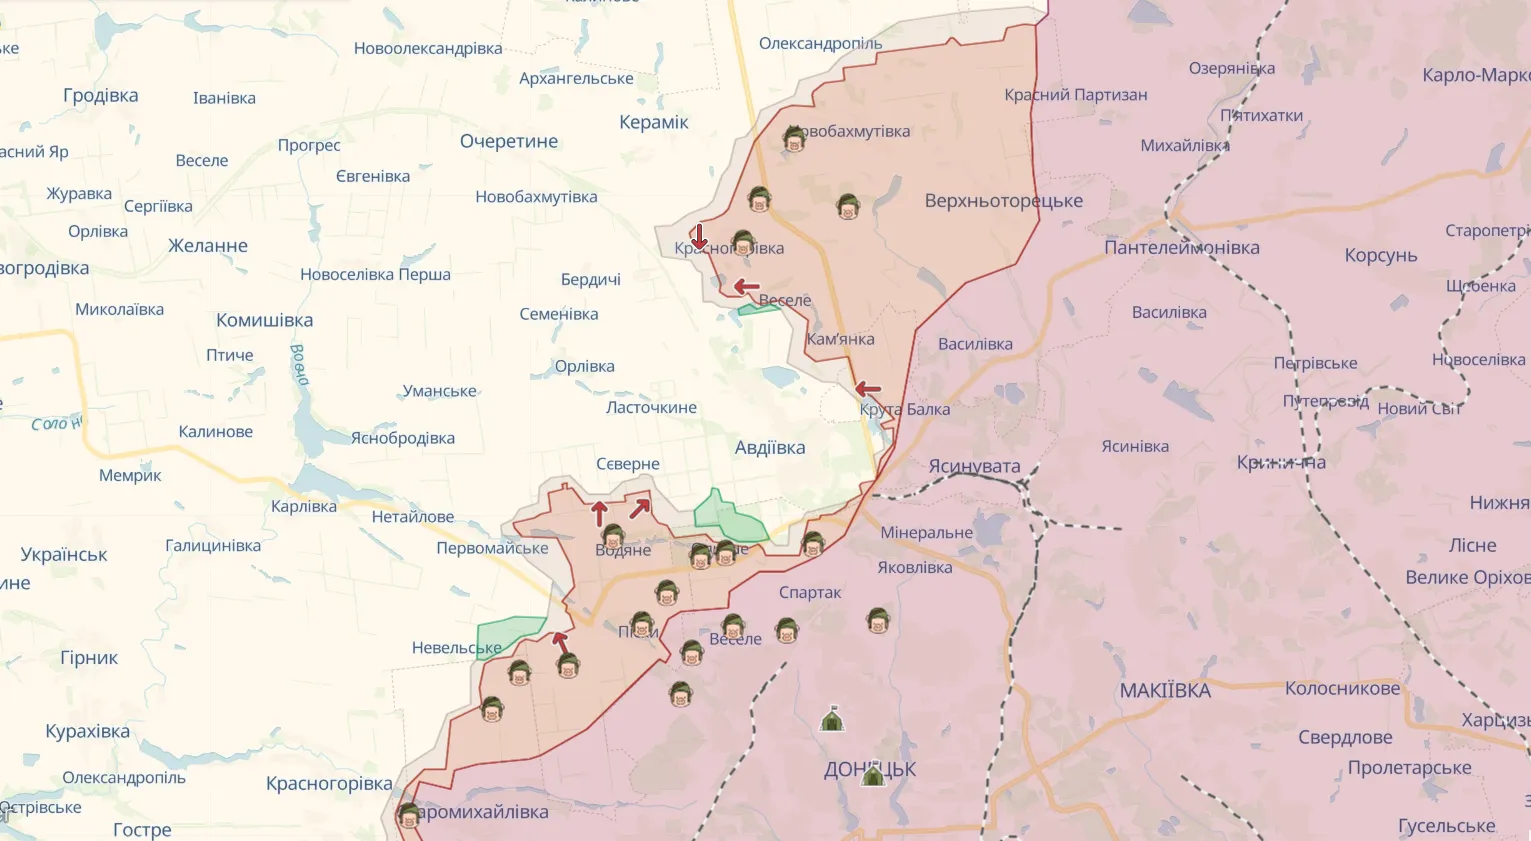 Войска РФ стягивают силы под Авдеевку, ВСУ готовятся к третьей волне обострения, – Барабаш